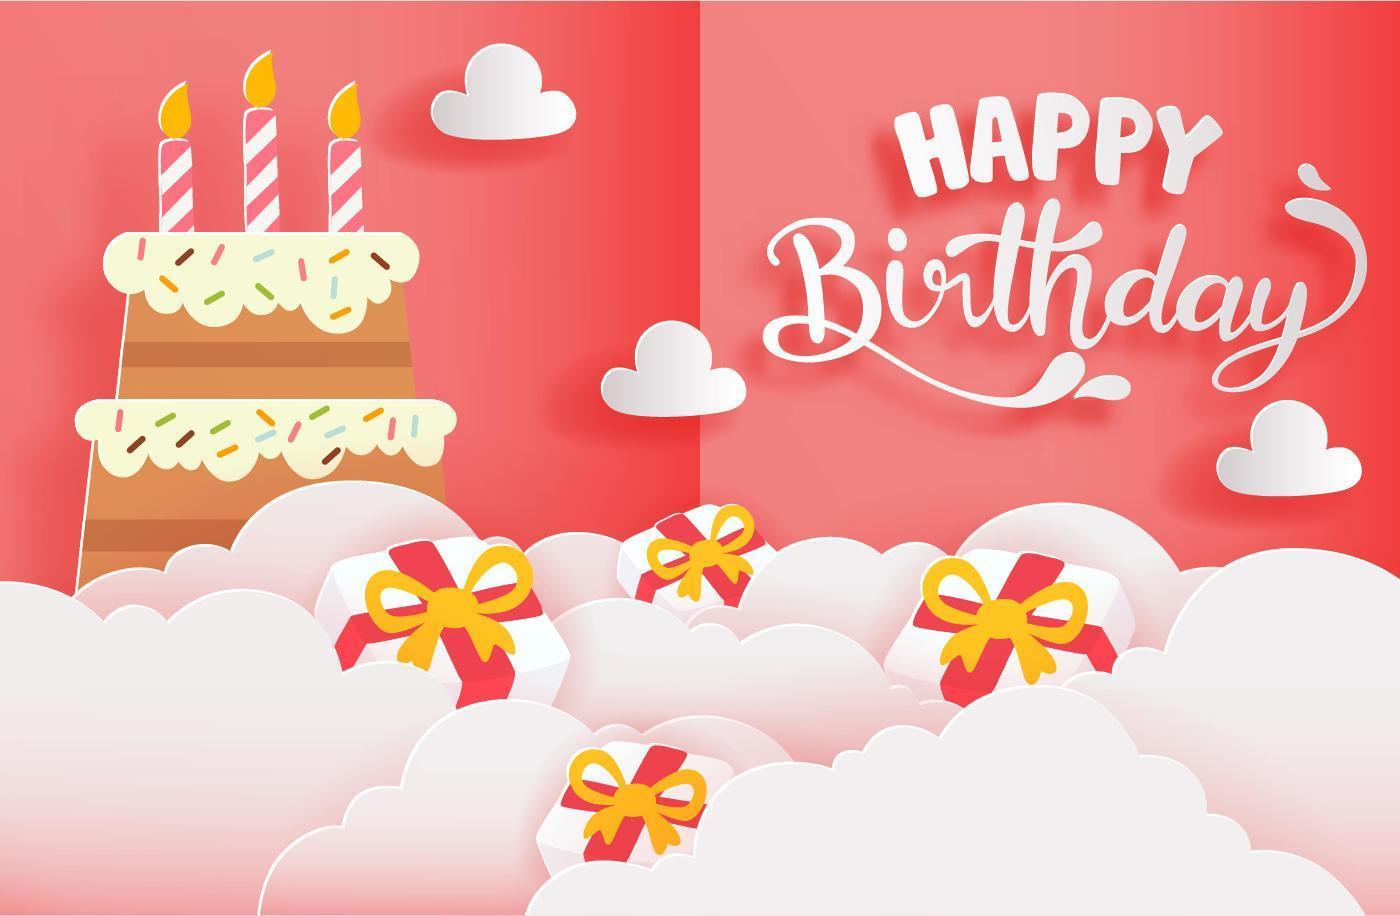 cartão de feliz aniversário com corte de papel estilo com bolo e presentes vetor